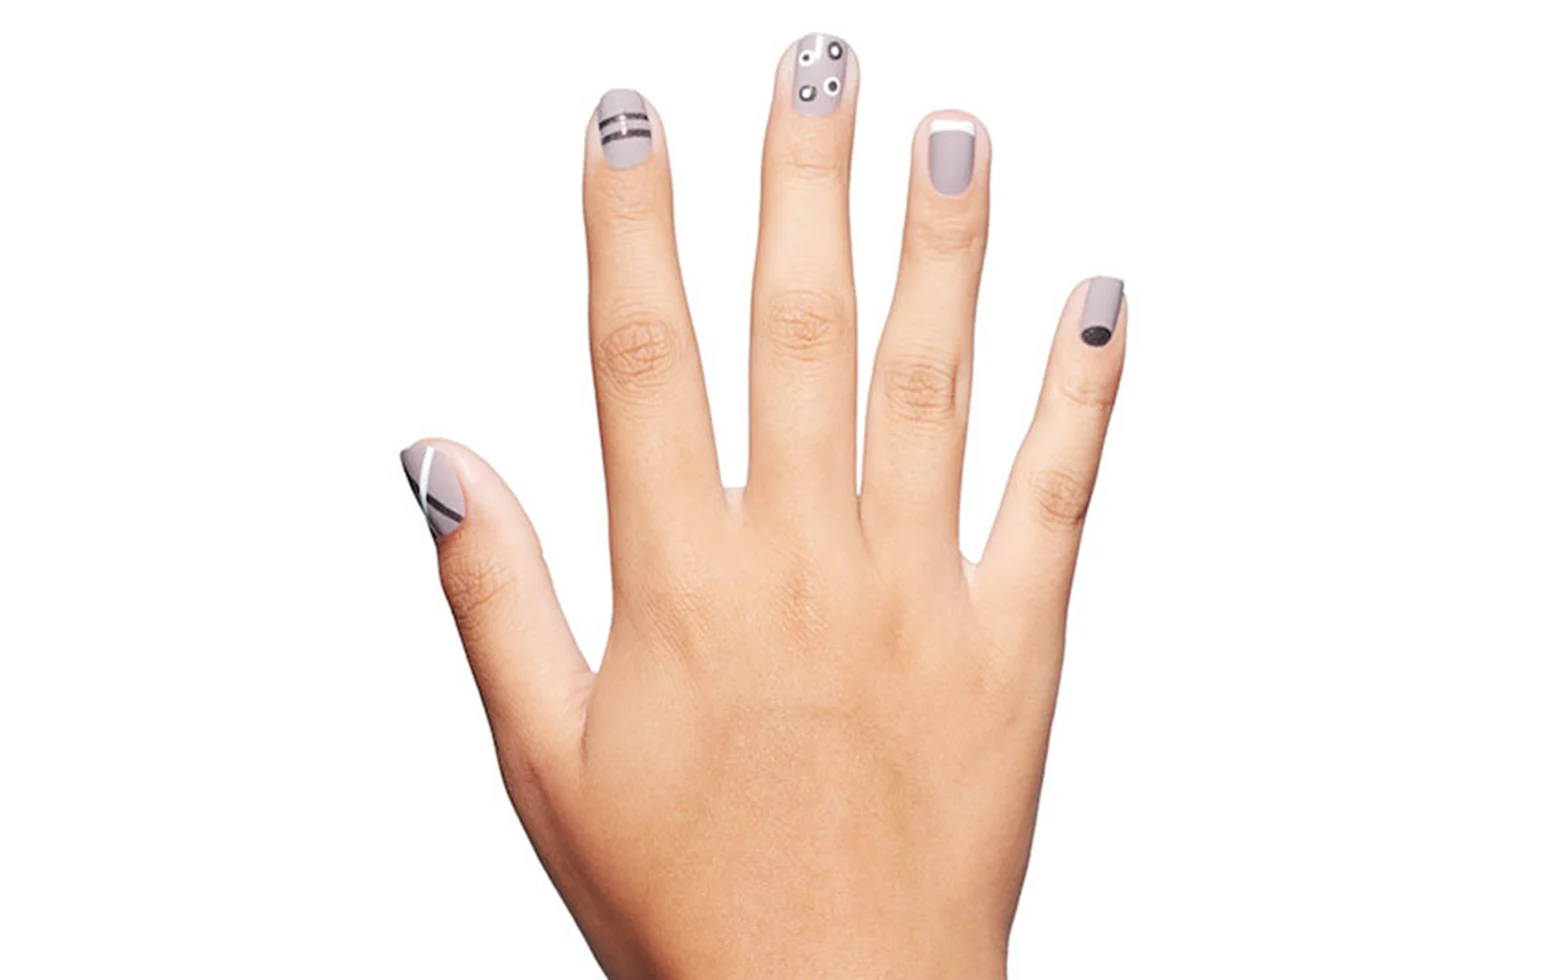 4. Minimalist Nail Art Designs - wide 6